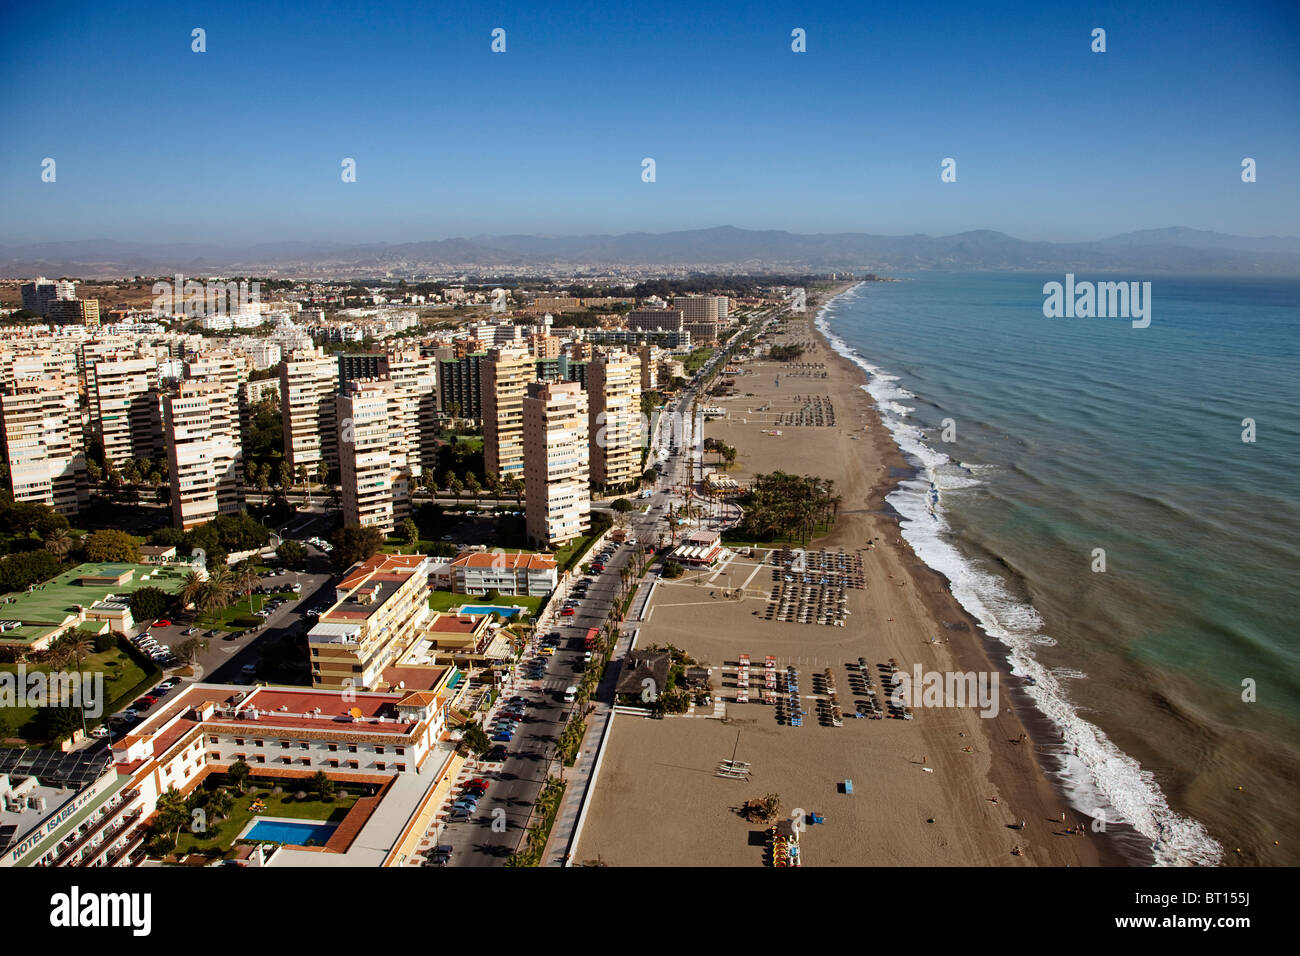 Vista aerea playas del Bajondillo Torremolinos Málaga Costa del Sol Andalucía España Aerial view beaches andalusia spain Stock Photo